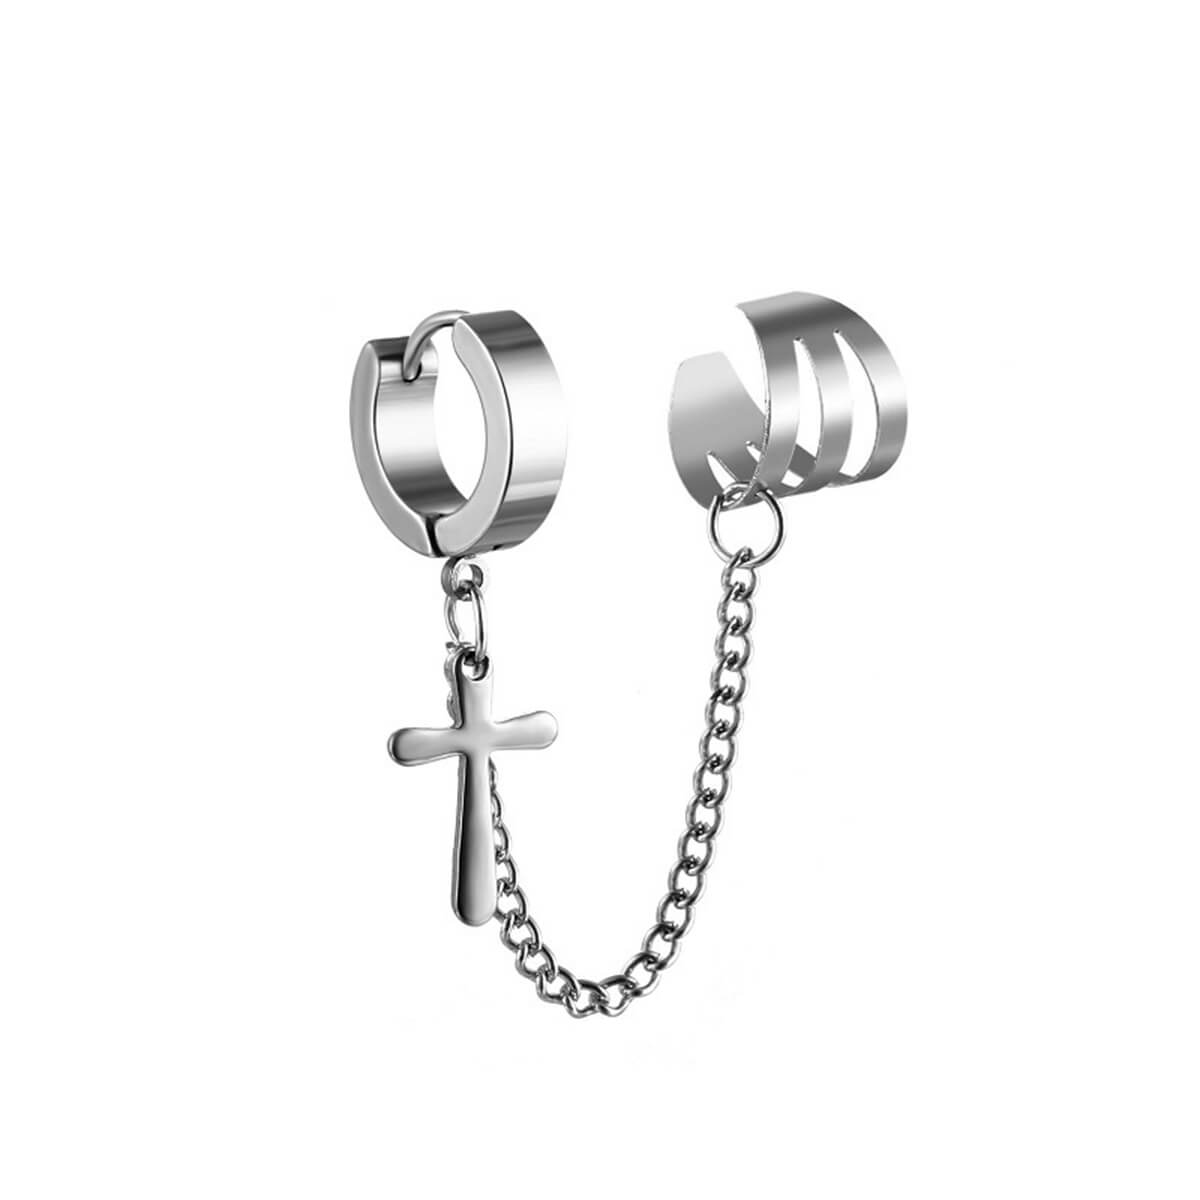 Second ear earring ear cuff cross pendant (Steel 316L)